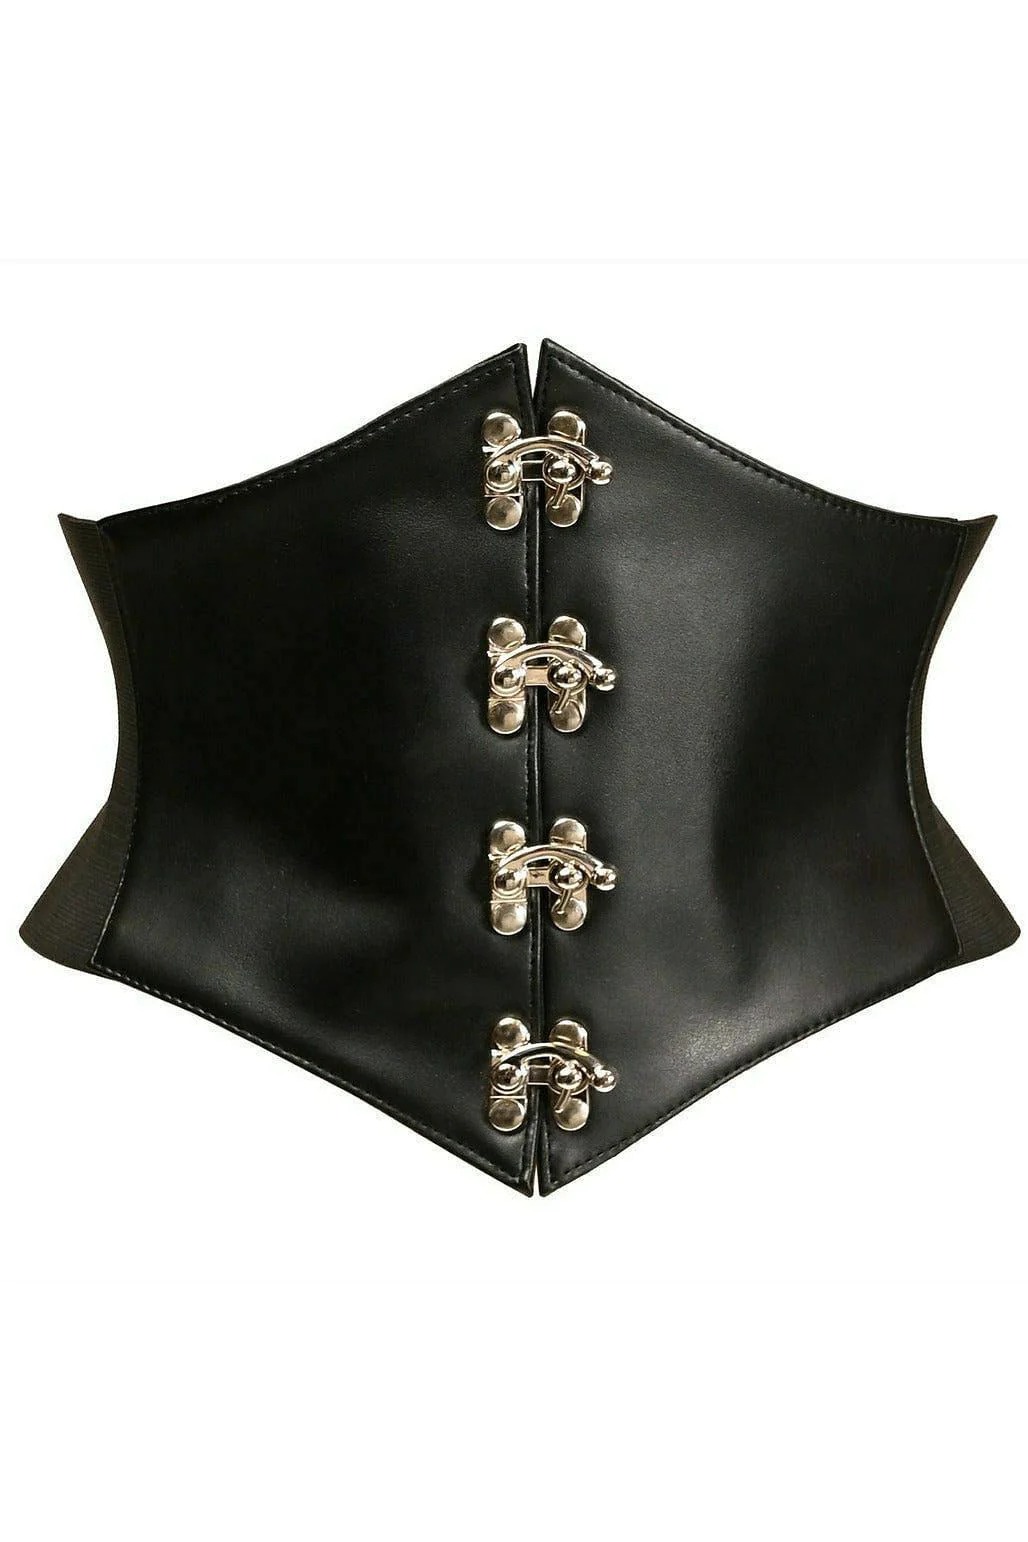 https://www.thecostumeland.com/images/zoom/dslv-1469pl-plus-size-black-faux-leather-corset-belt-cincher.jpg